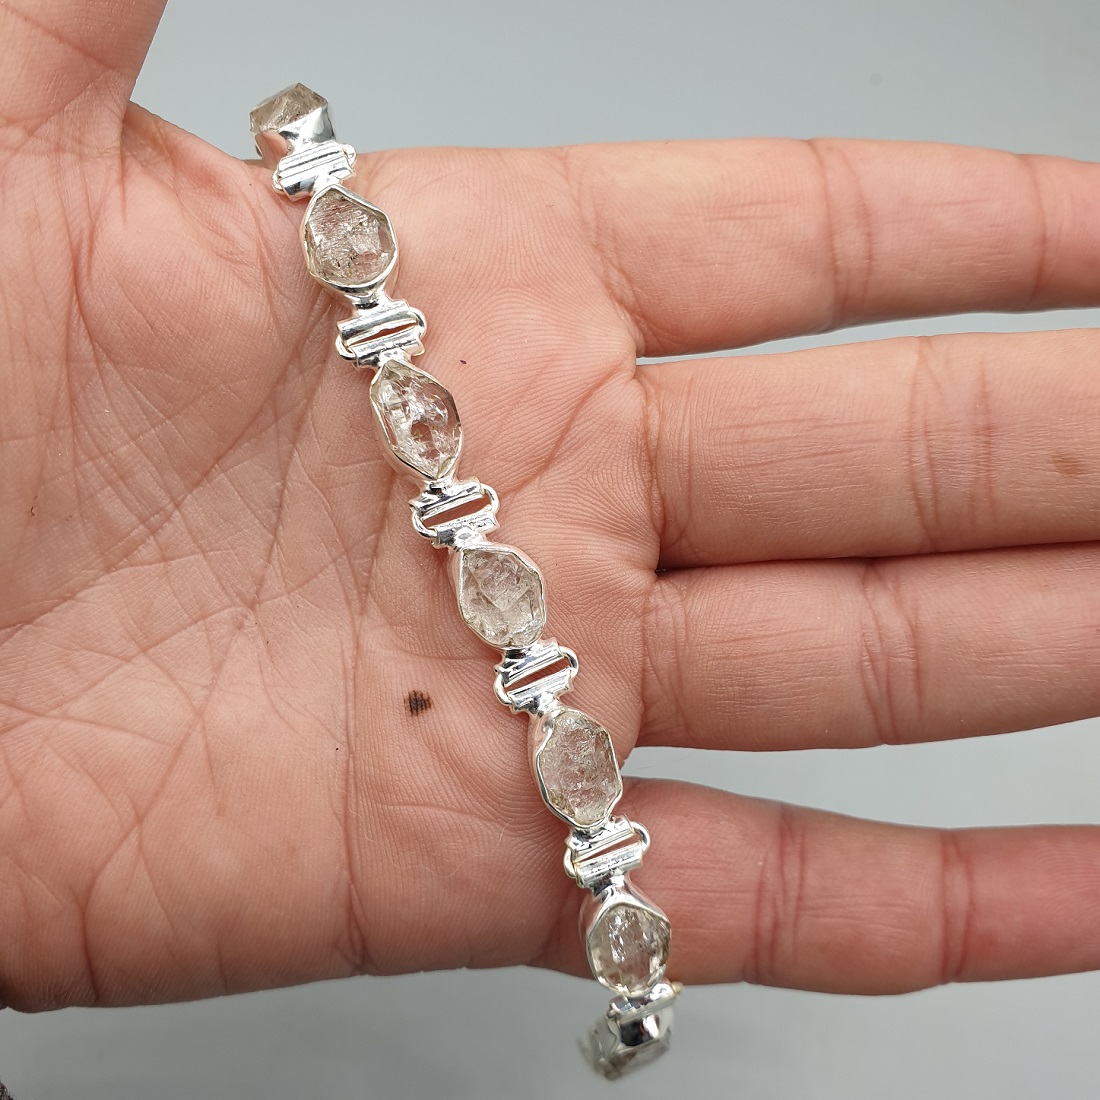 925 Sterling zilveren armband met Herkimer diamant